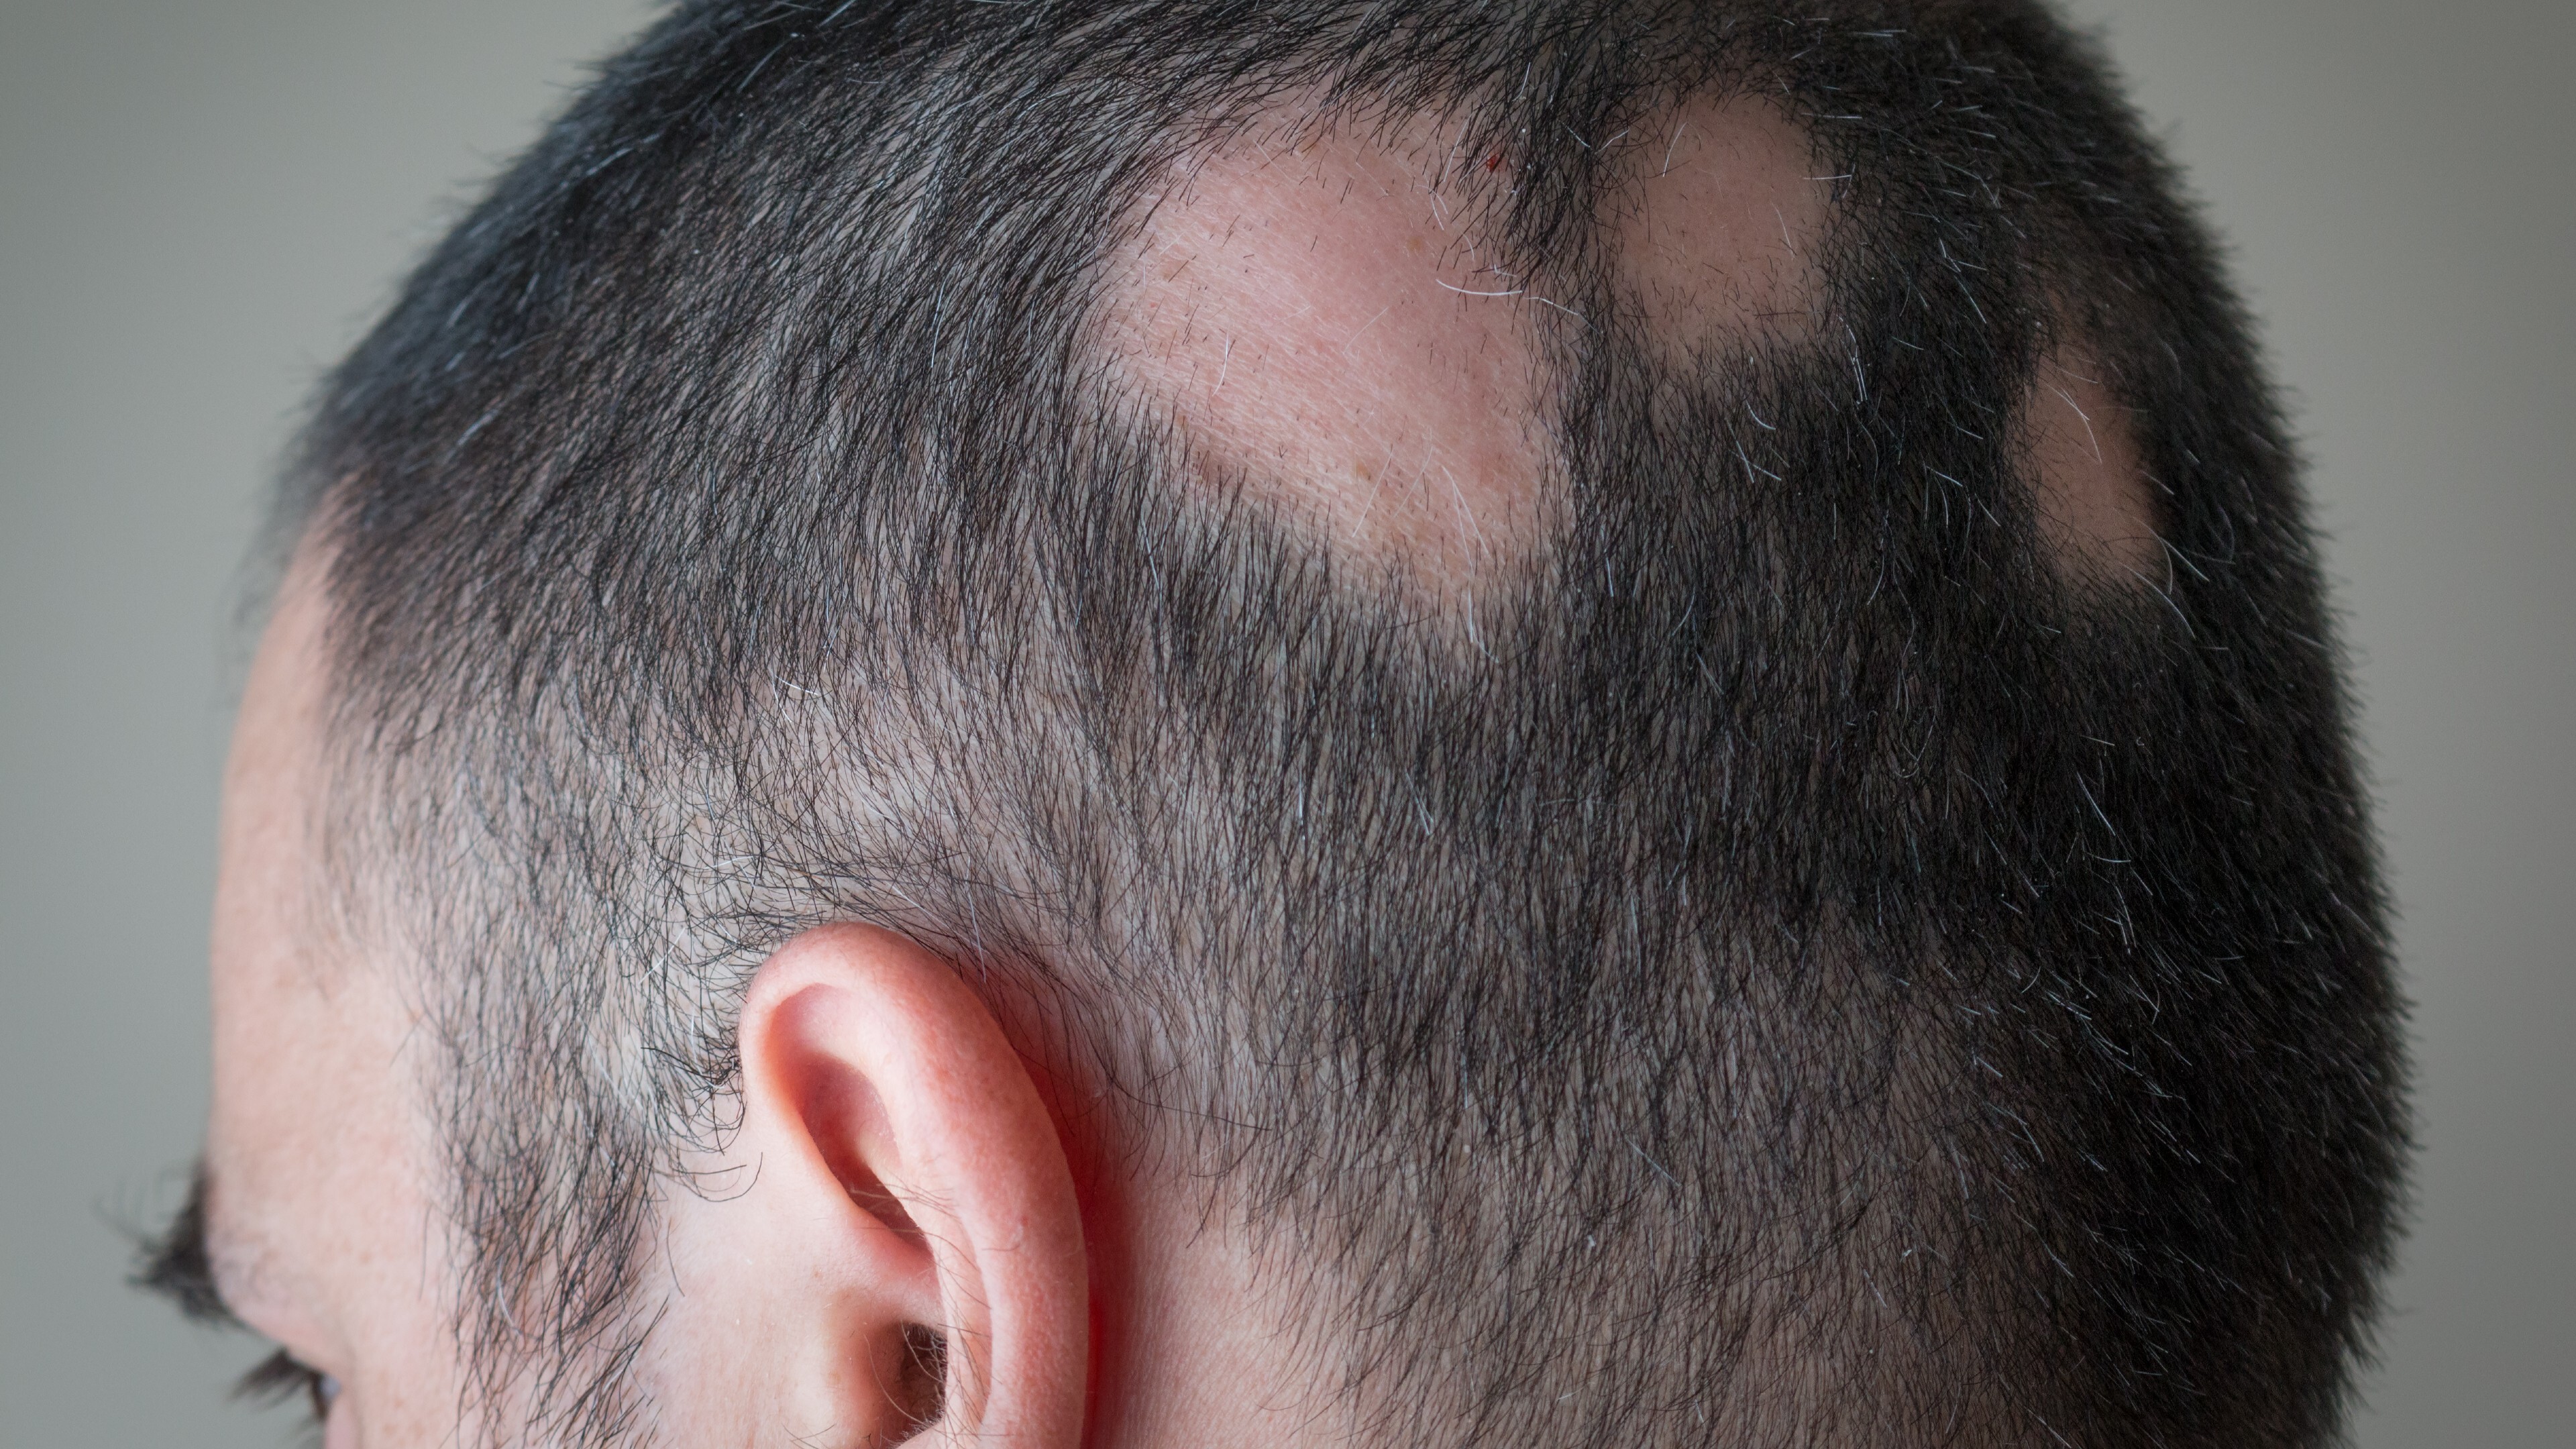 Unidos aprueba el primer tratamiento contra una forma grave de alopecia